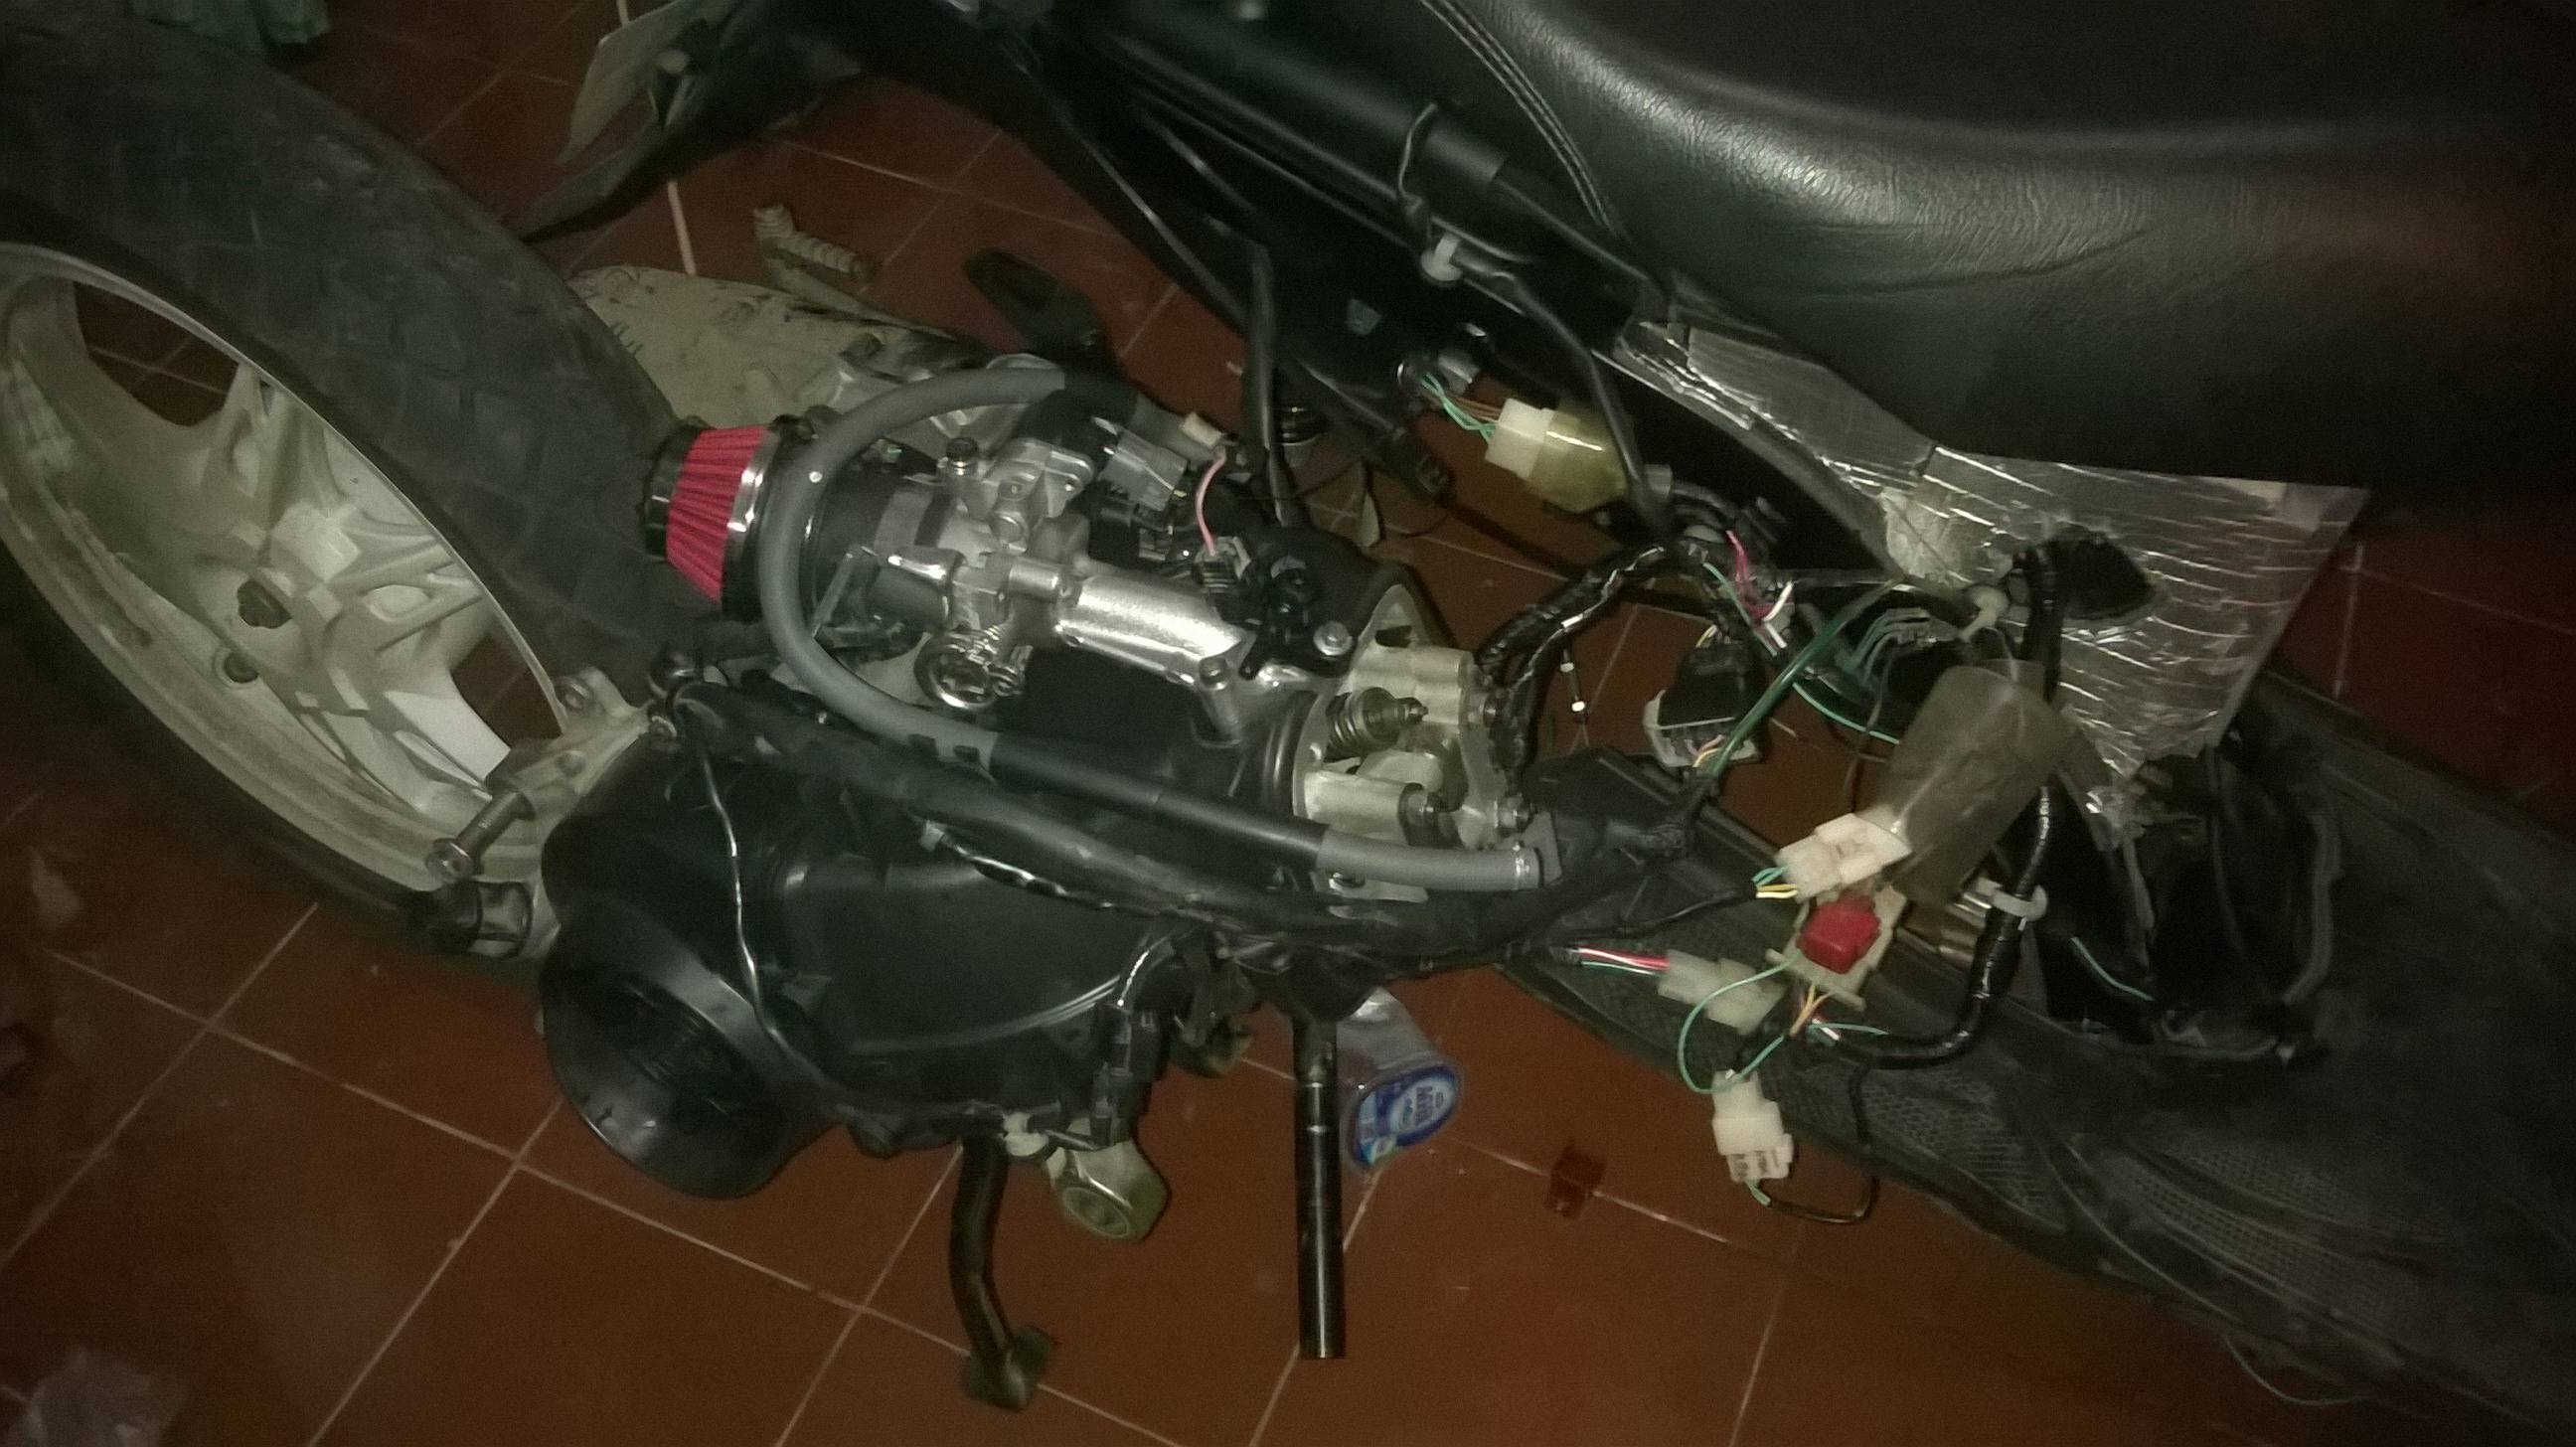 Bayangan Project Convert Honda CS1 Menjadi Injeksi Ahmadeathbat